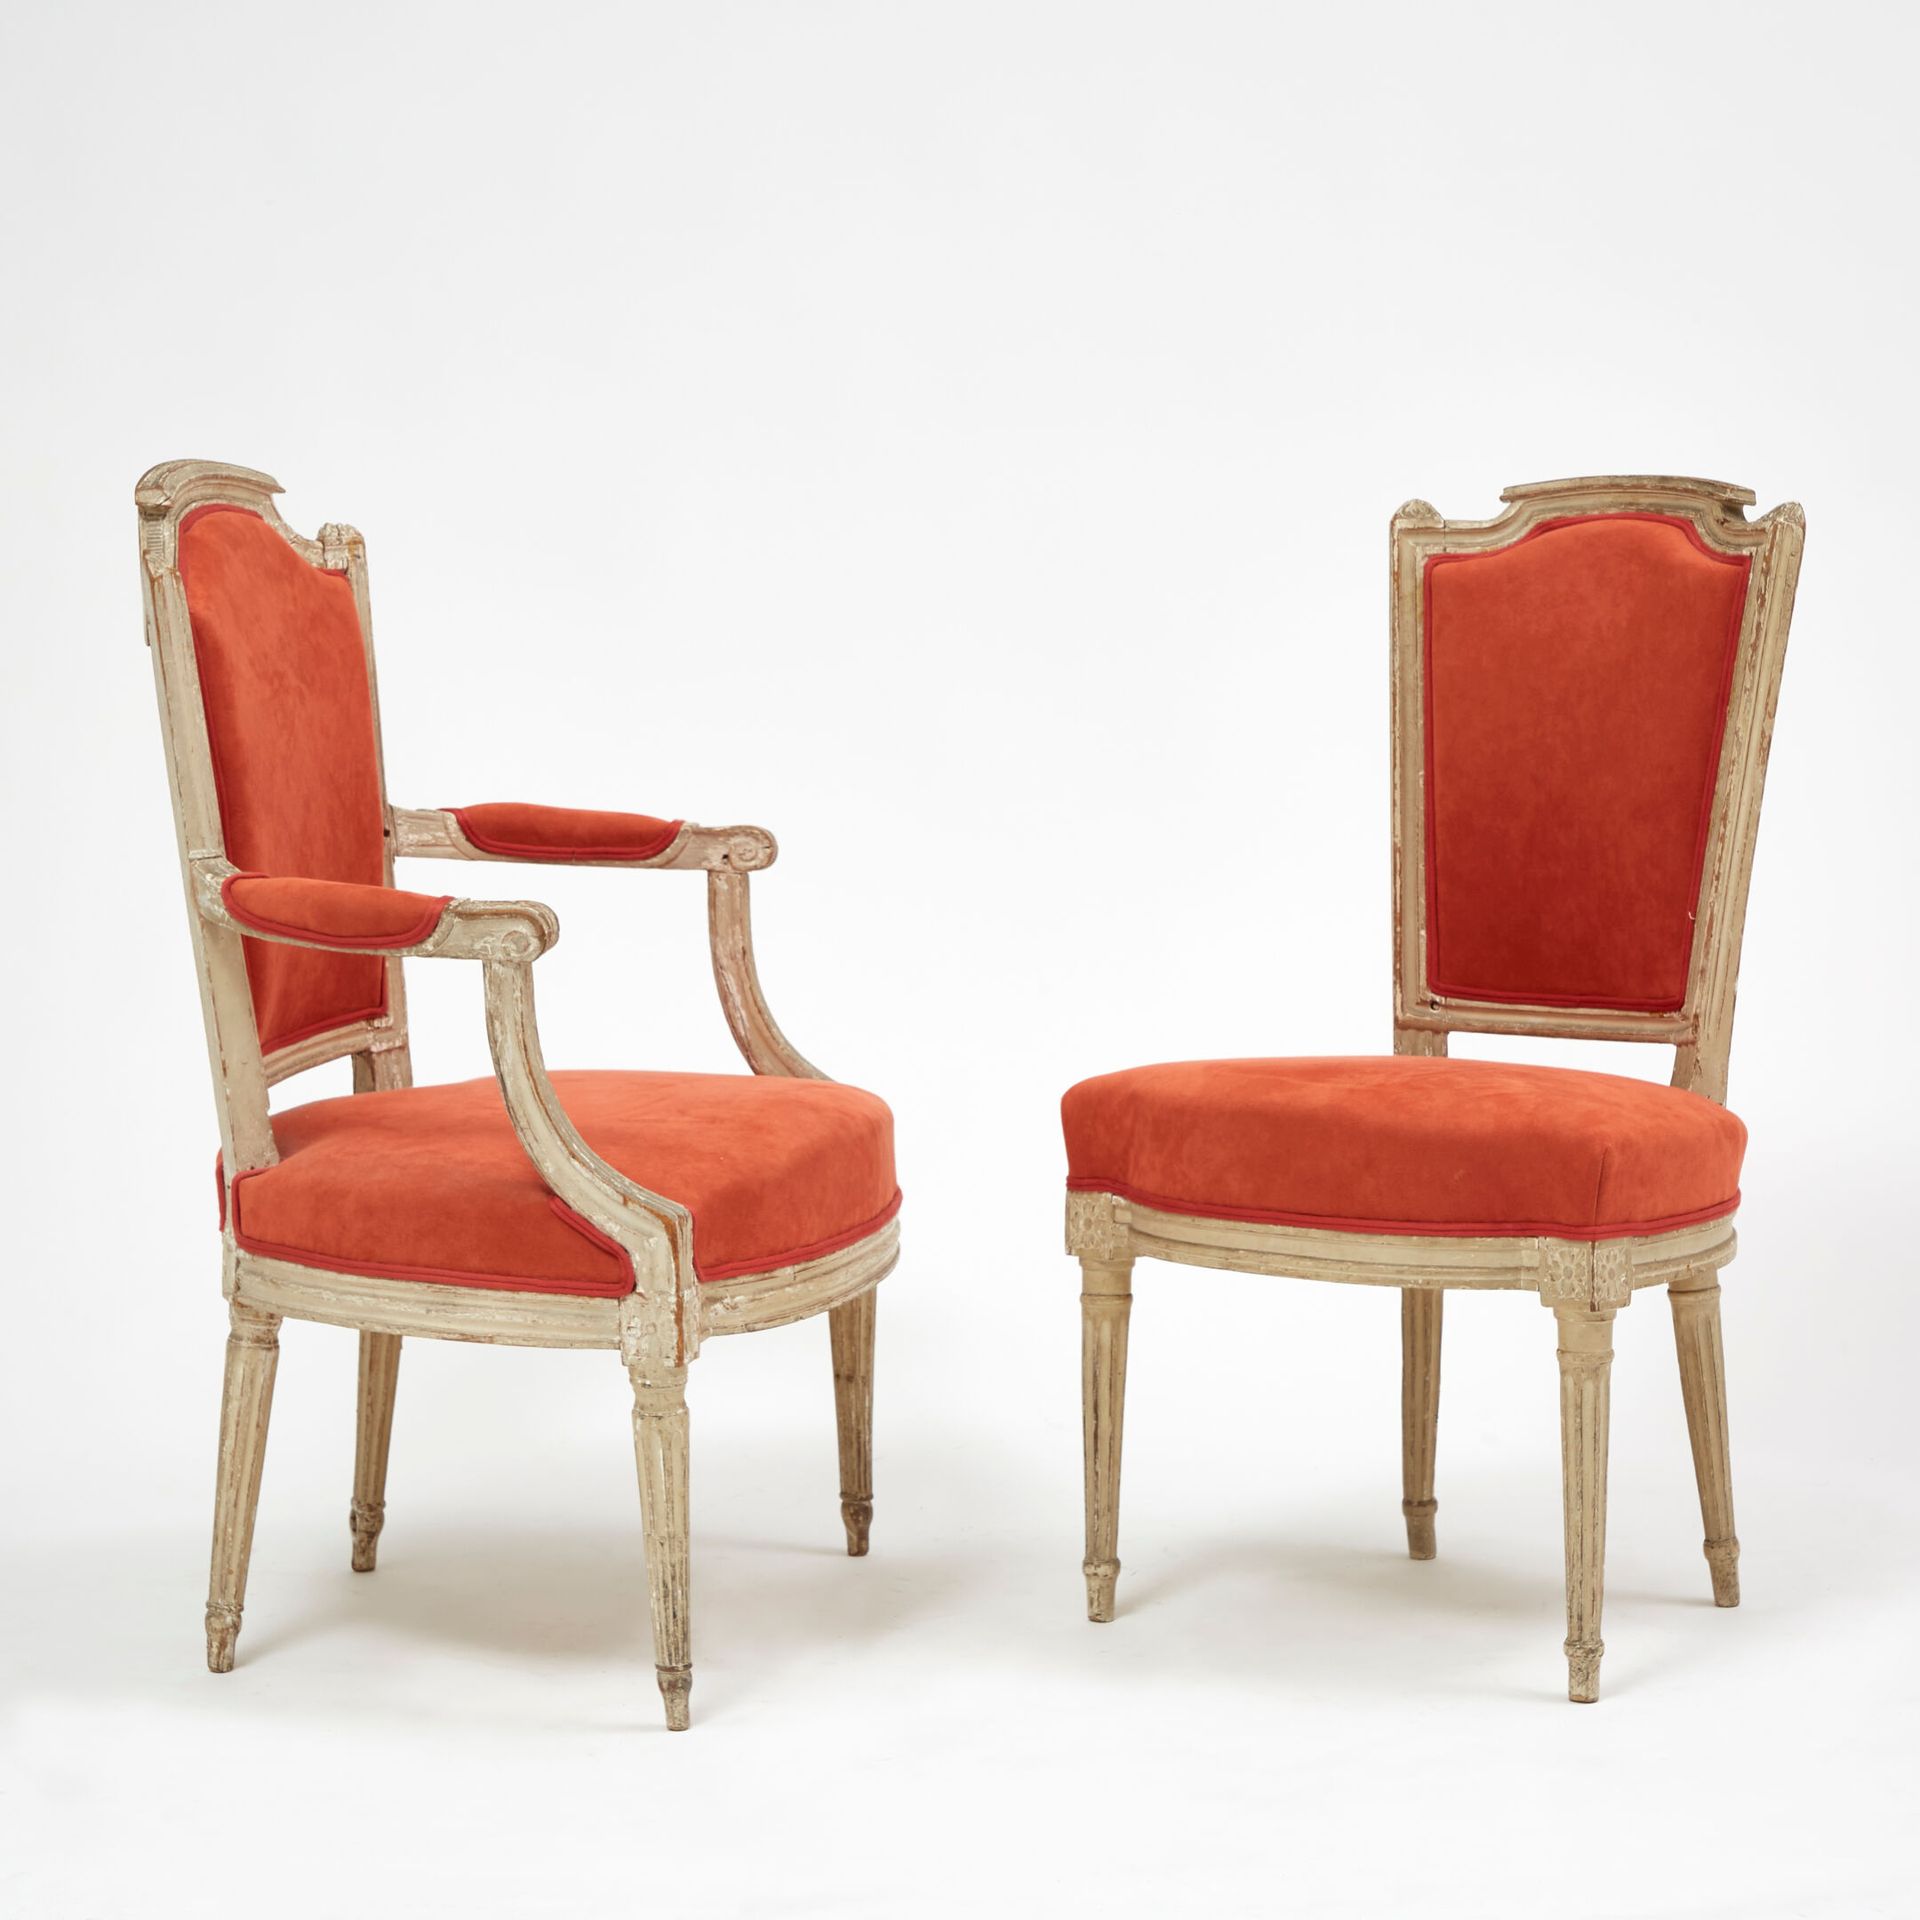 ÉPOQUE LOUIS XVI 路易十六时期
一把卡布里奥莱扶手椅和一把同样设计的椅子，木质模压雕刻，白色漆面。梯形靠背为 "宪兵头盔 "造型，扶手以卷轴式袖&hellip;